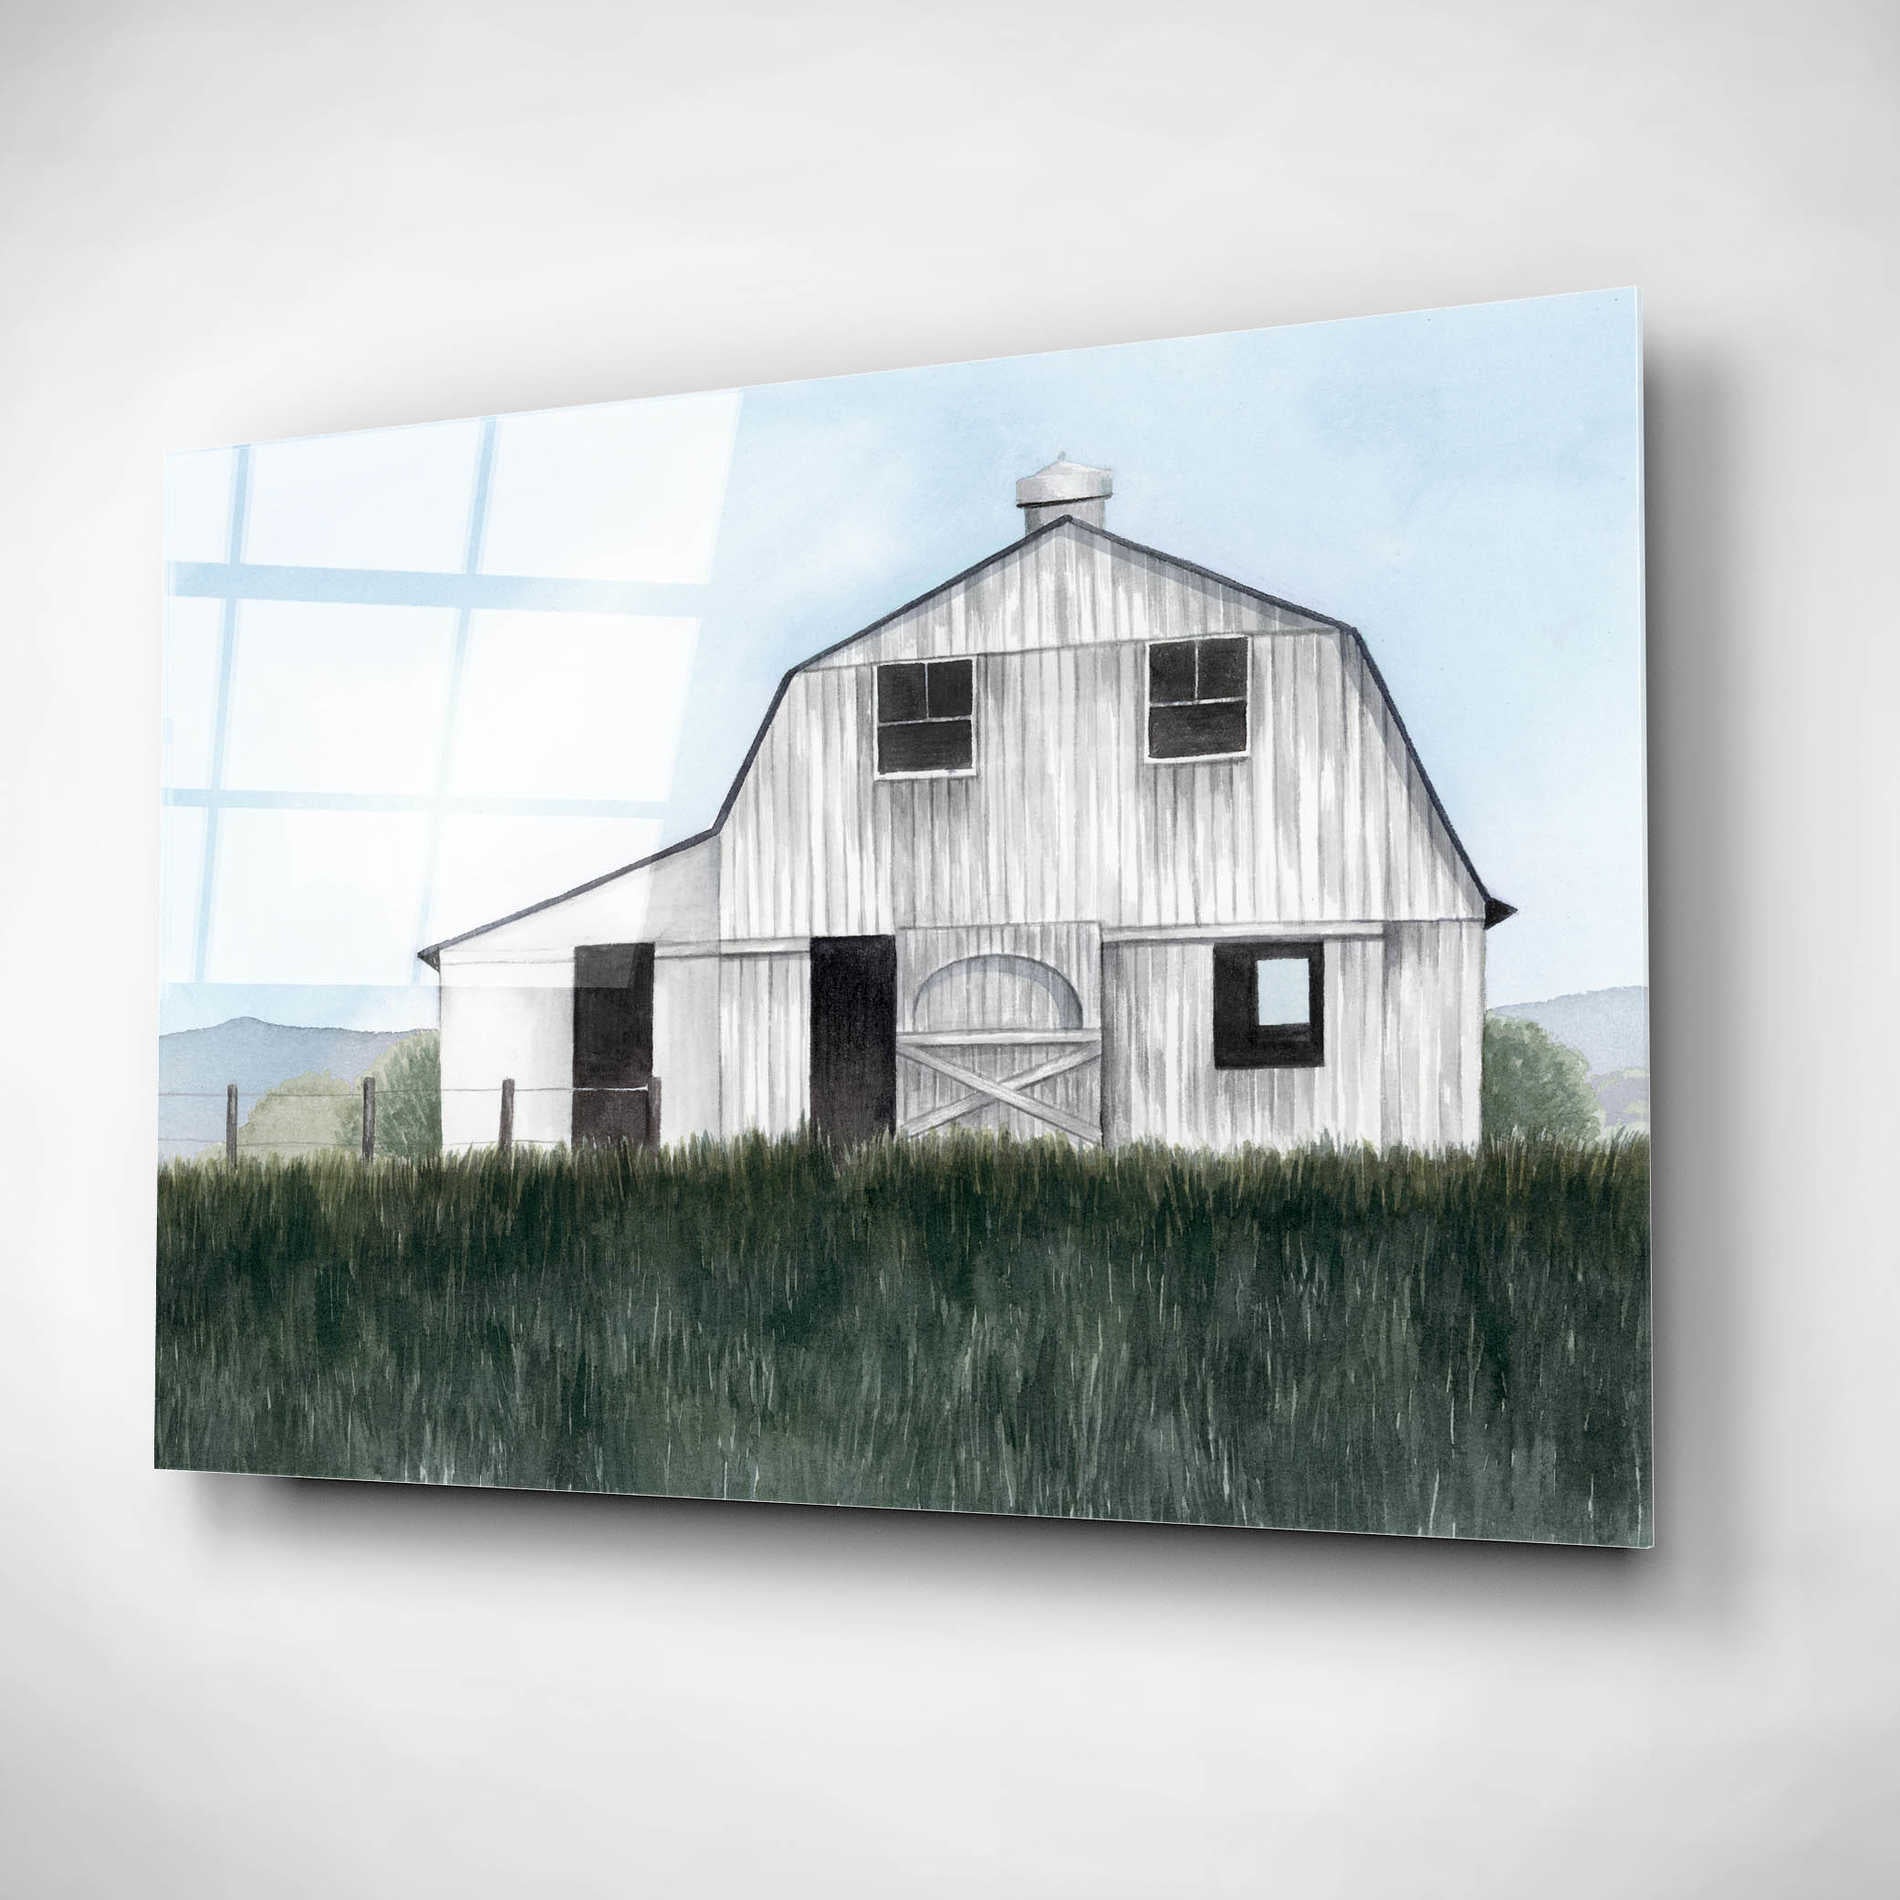 Epic Art 'Bygone Barn II' by Grace Popp, Acrylic Wall Glass,16x12